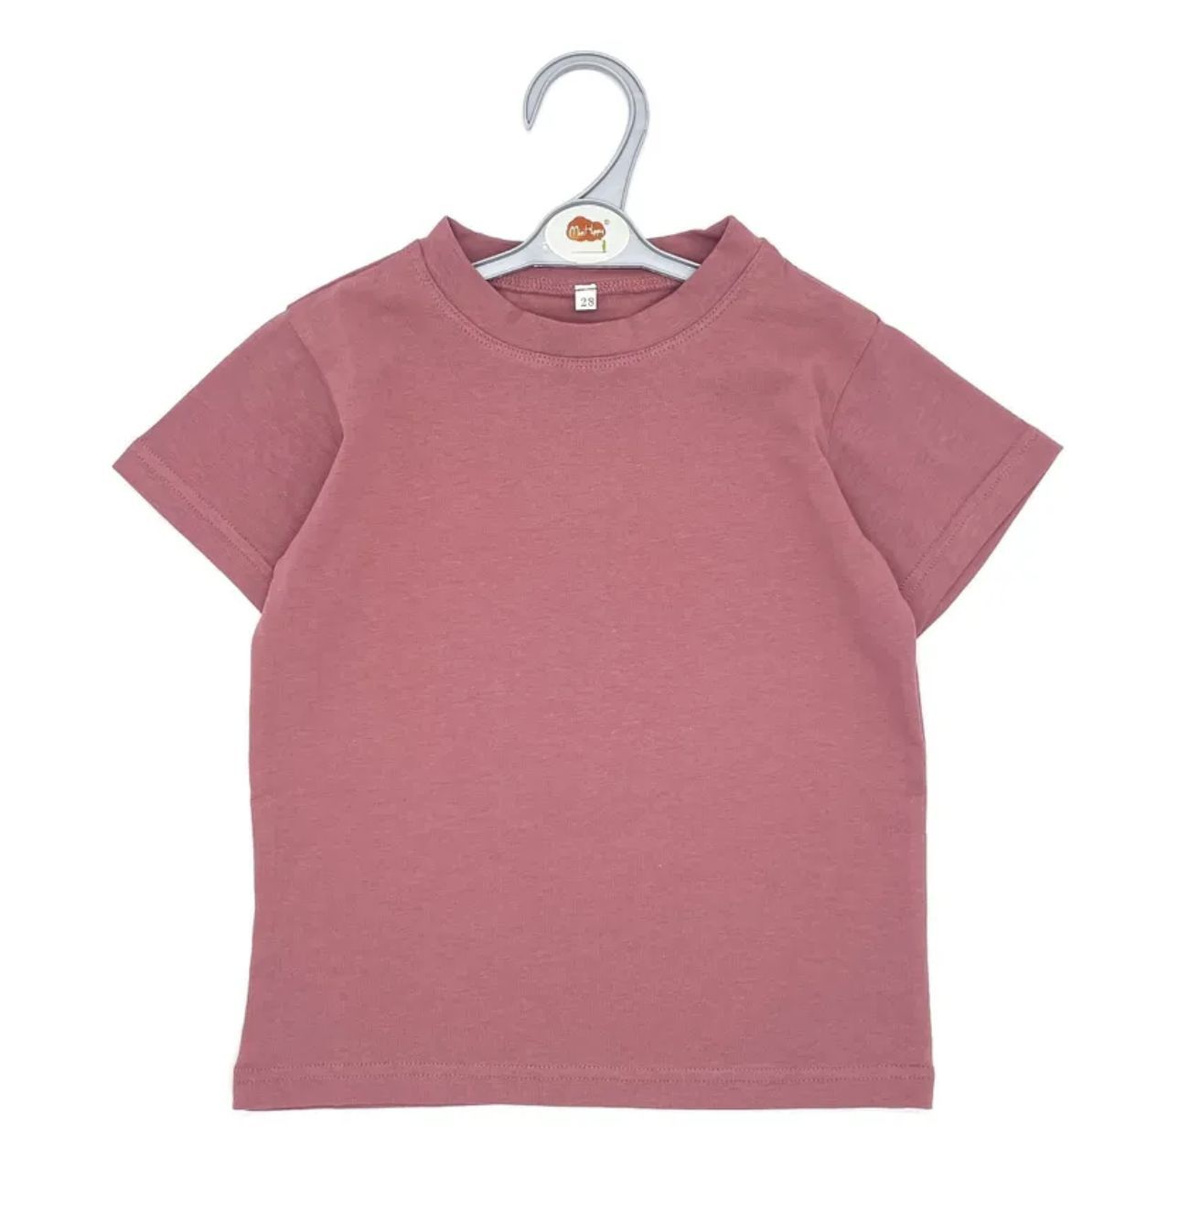 Розовая детская футболка  Код товара: 1039149605